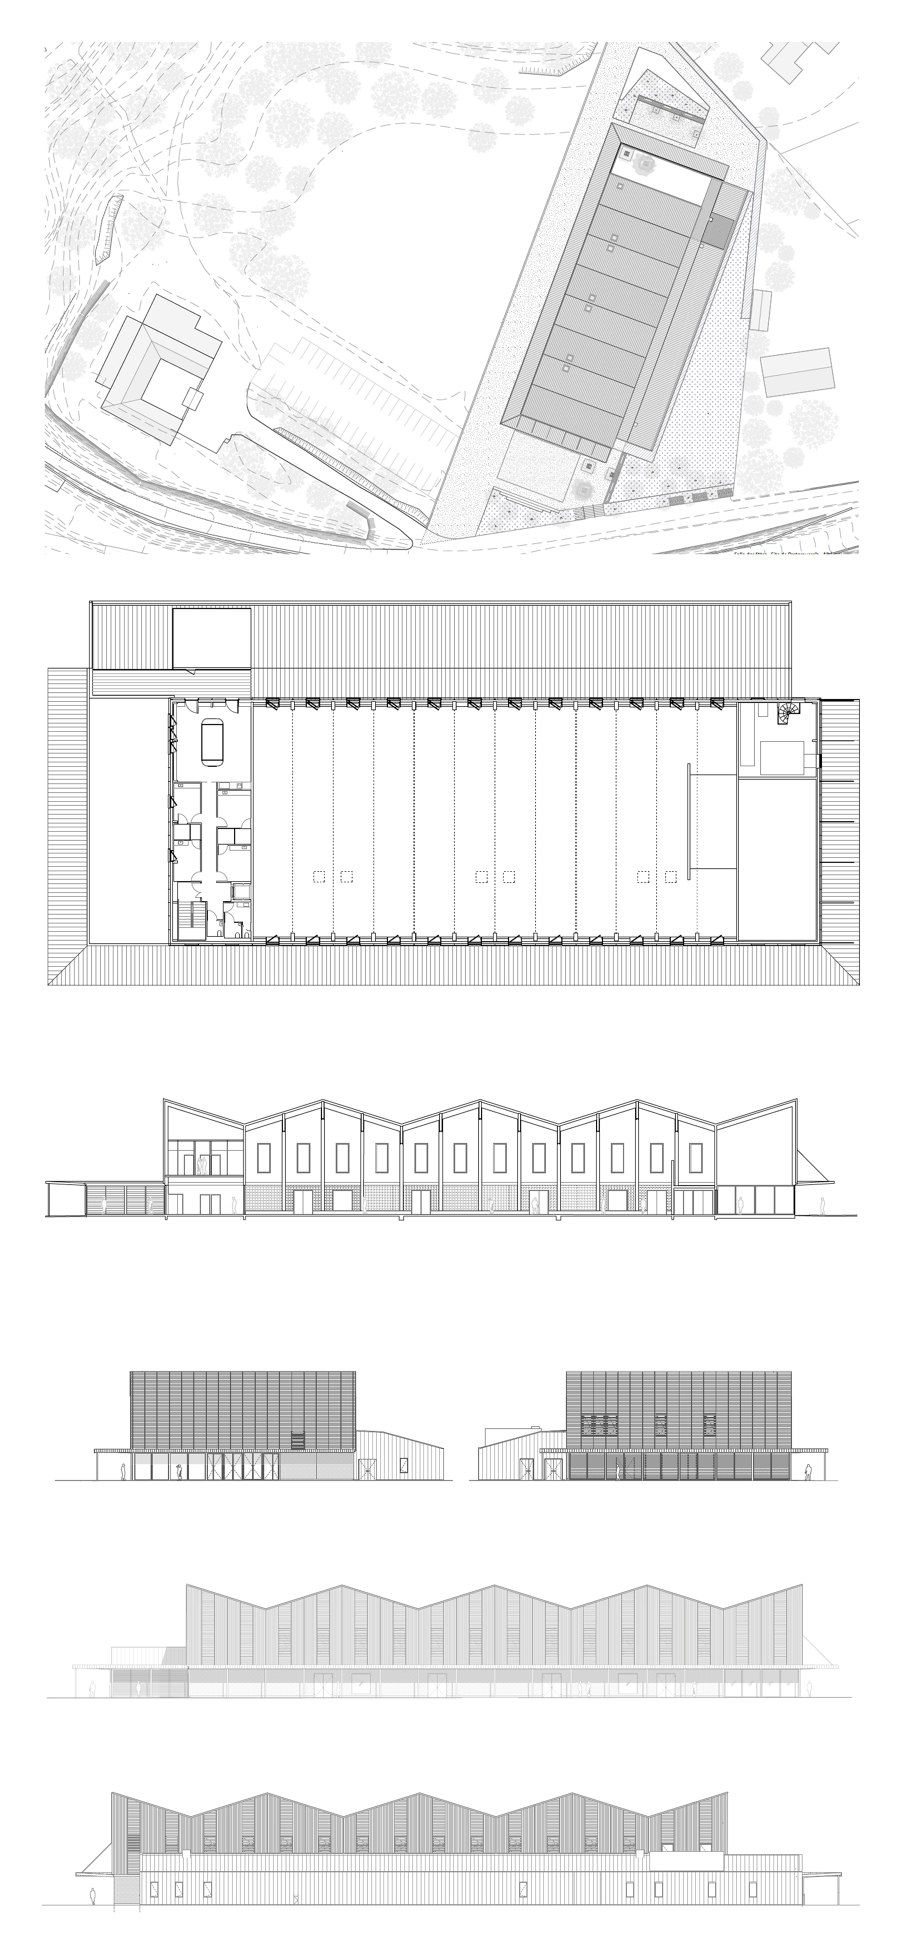 Pratgraussals Events Hall de PPA architectures | Édifices sacraux / Centres communautaires